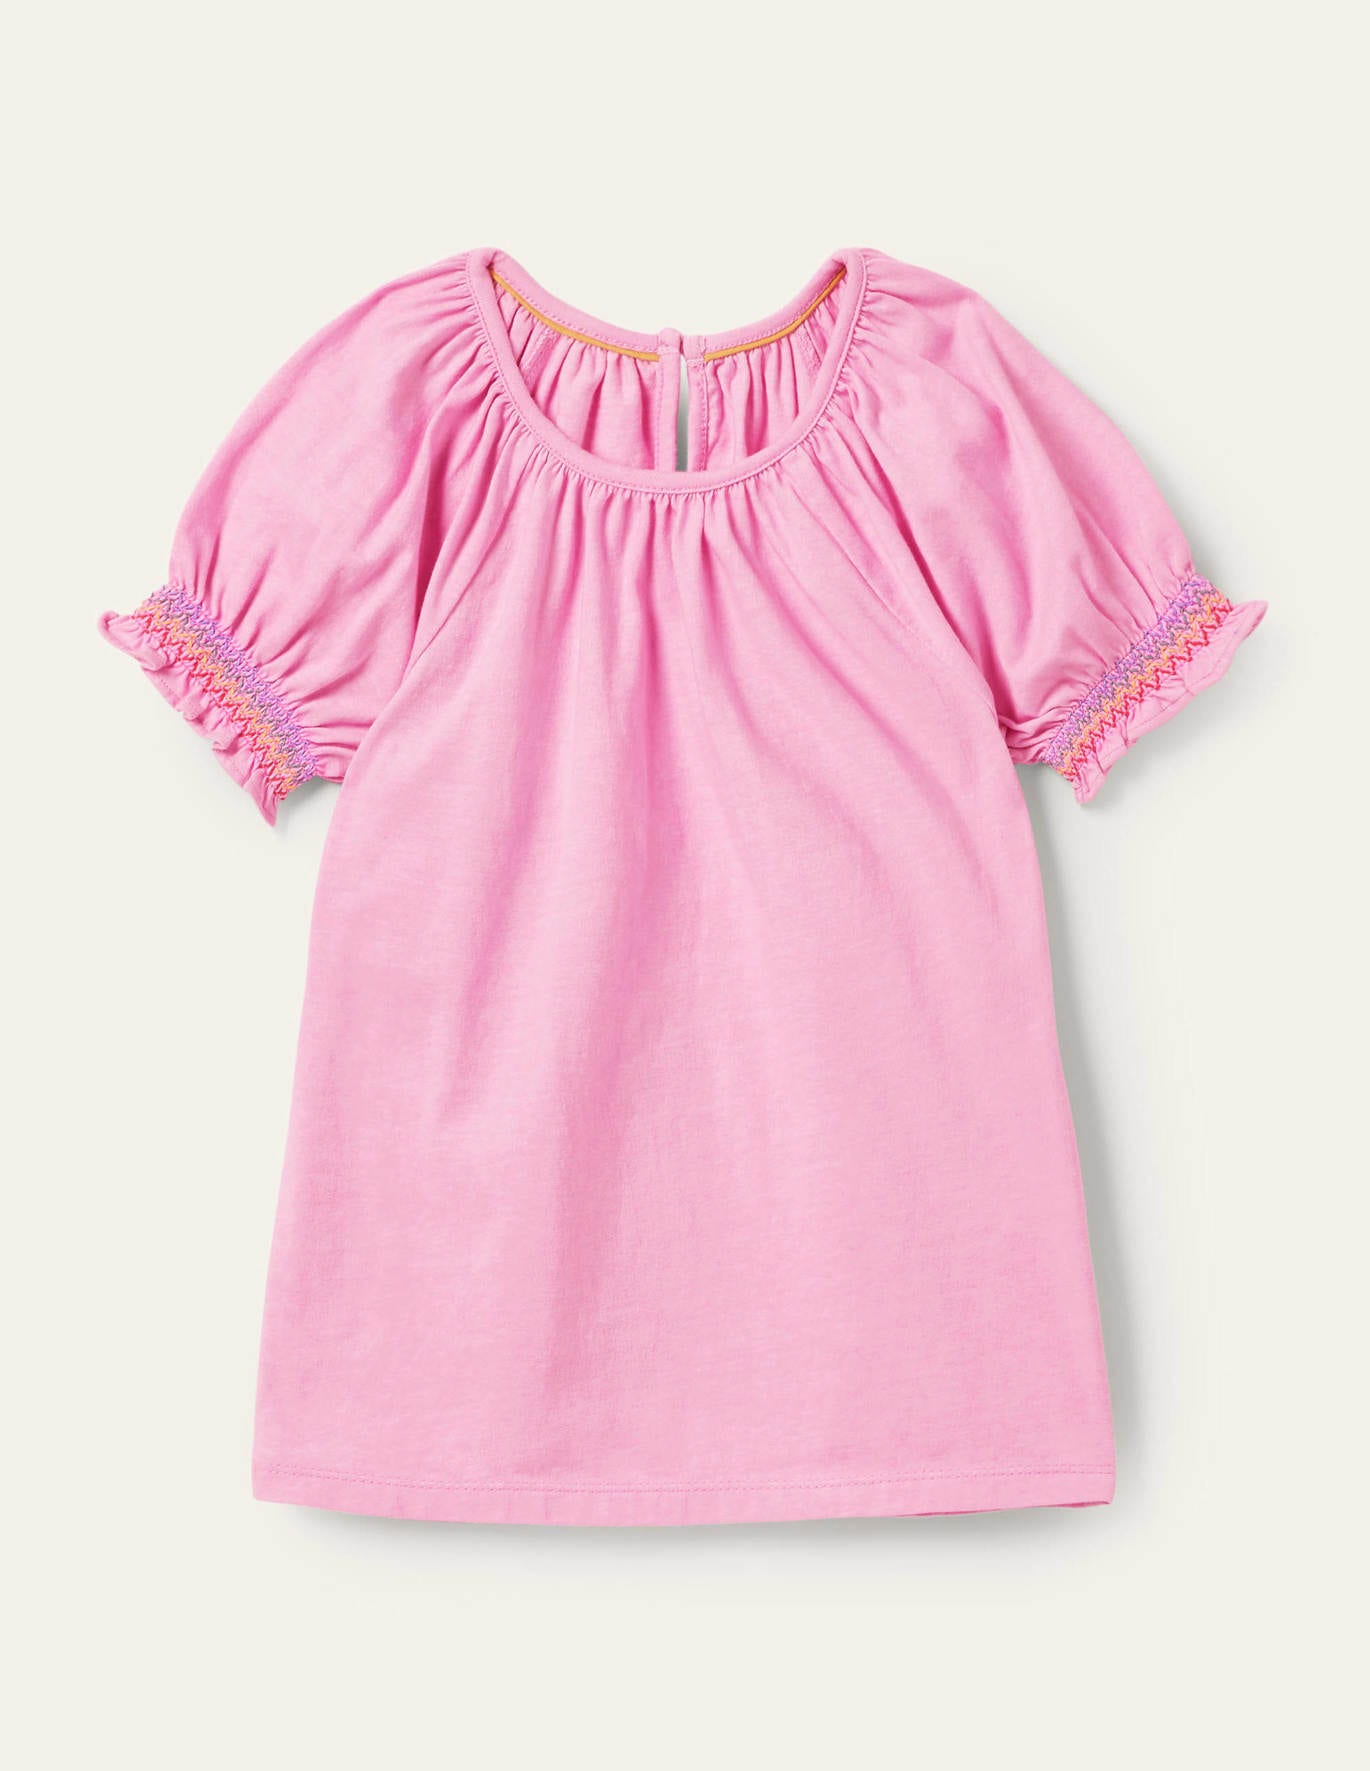 Boden Smocked Raglan T-shirt - Rosebay Pink